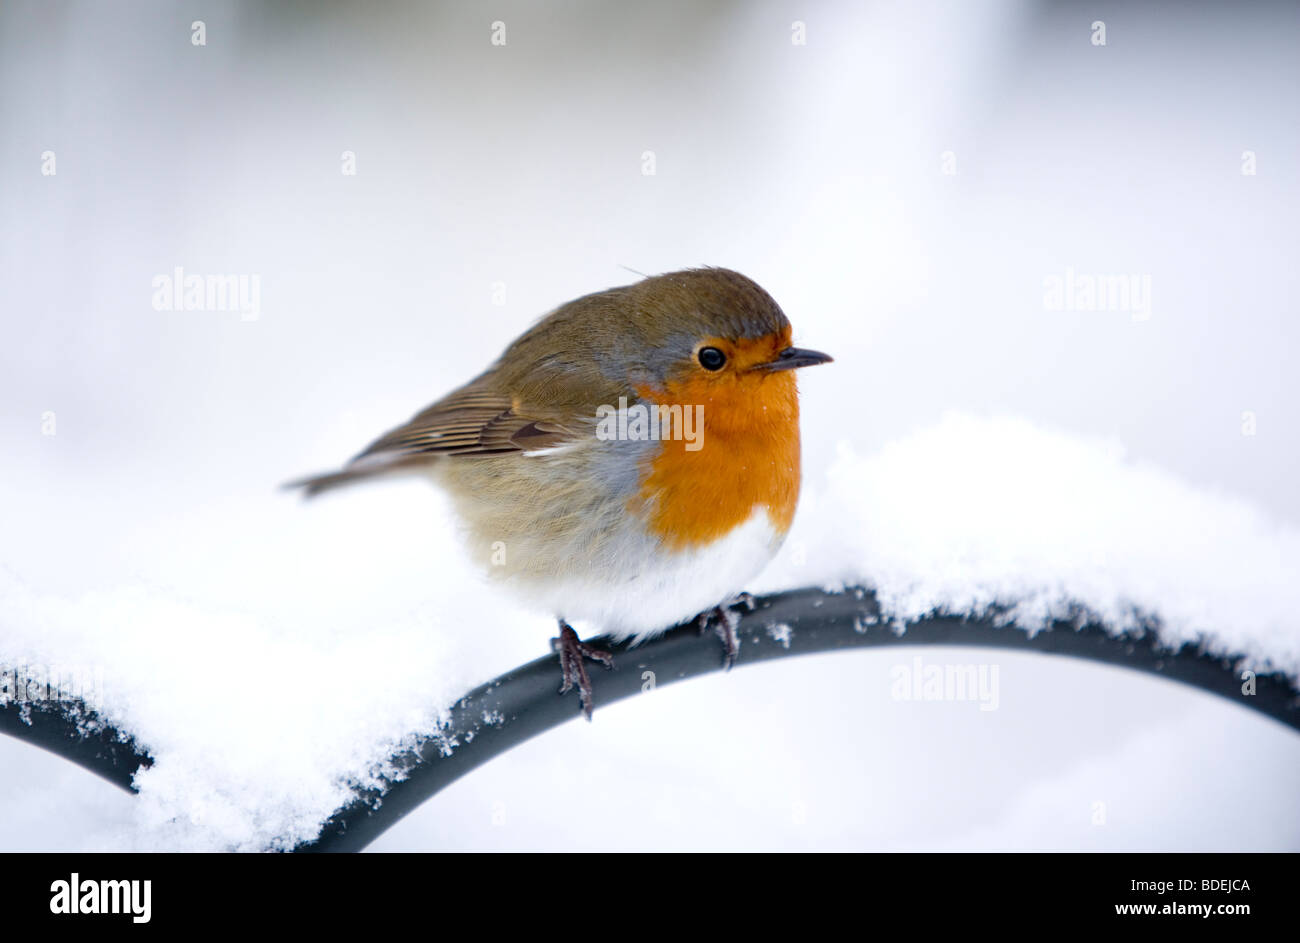 Robin perché sur main courante après les fortes chutes de neige, Londres, Angleterre, Royaume-Uni, Europe Banque D'Images